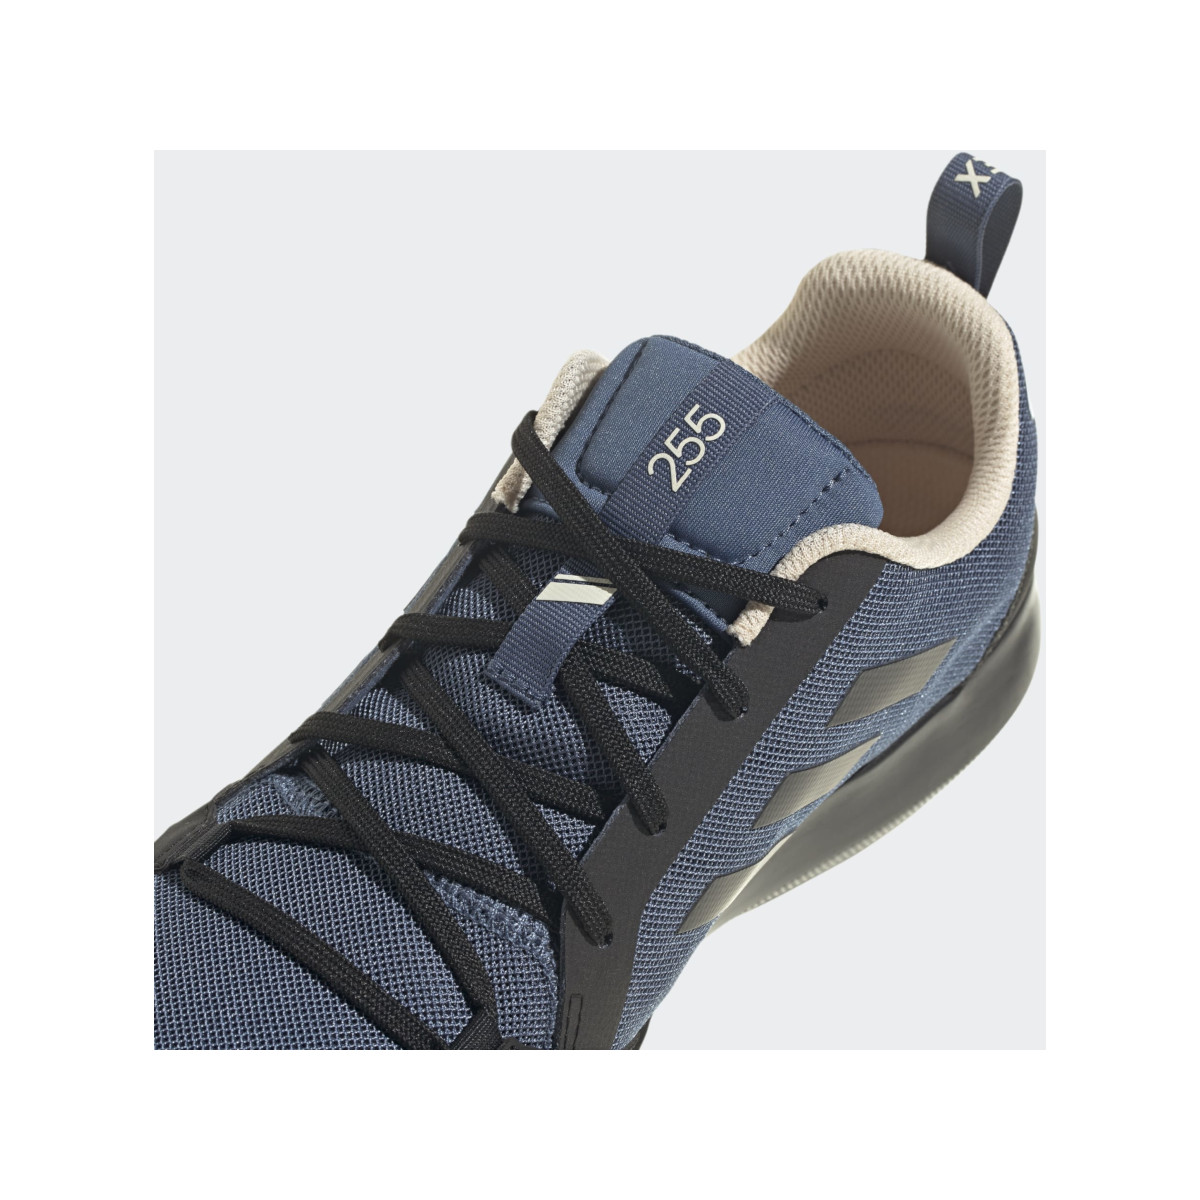 Adidas Boot Lace bootschoen heren zwart-blauw, maat 43 1/3